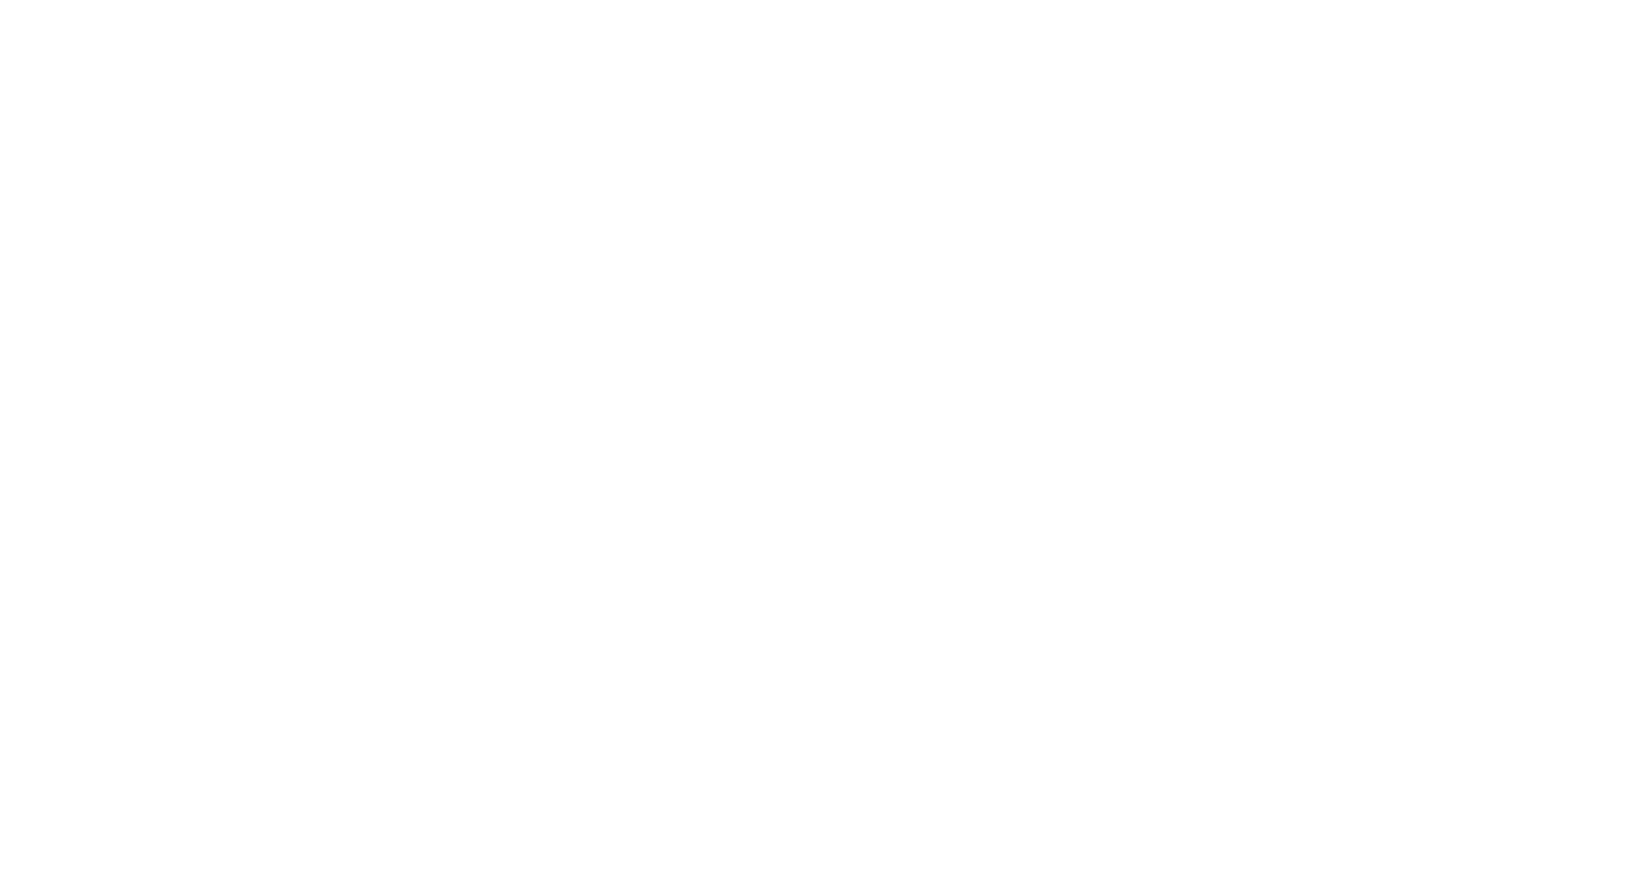 Münsterland - Das gute Leben